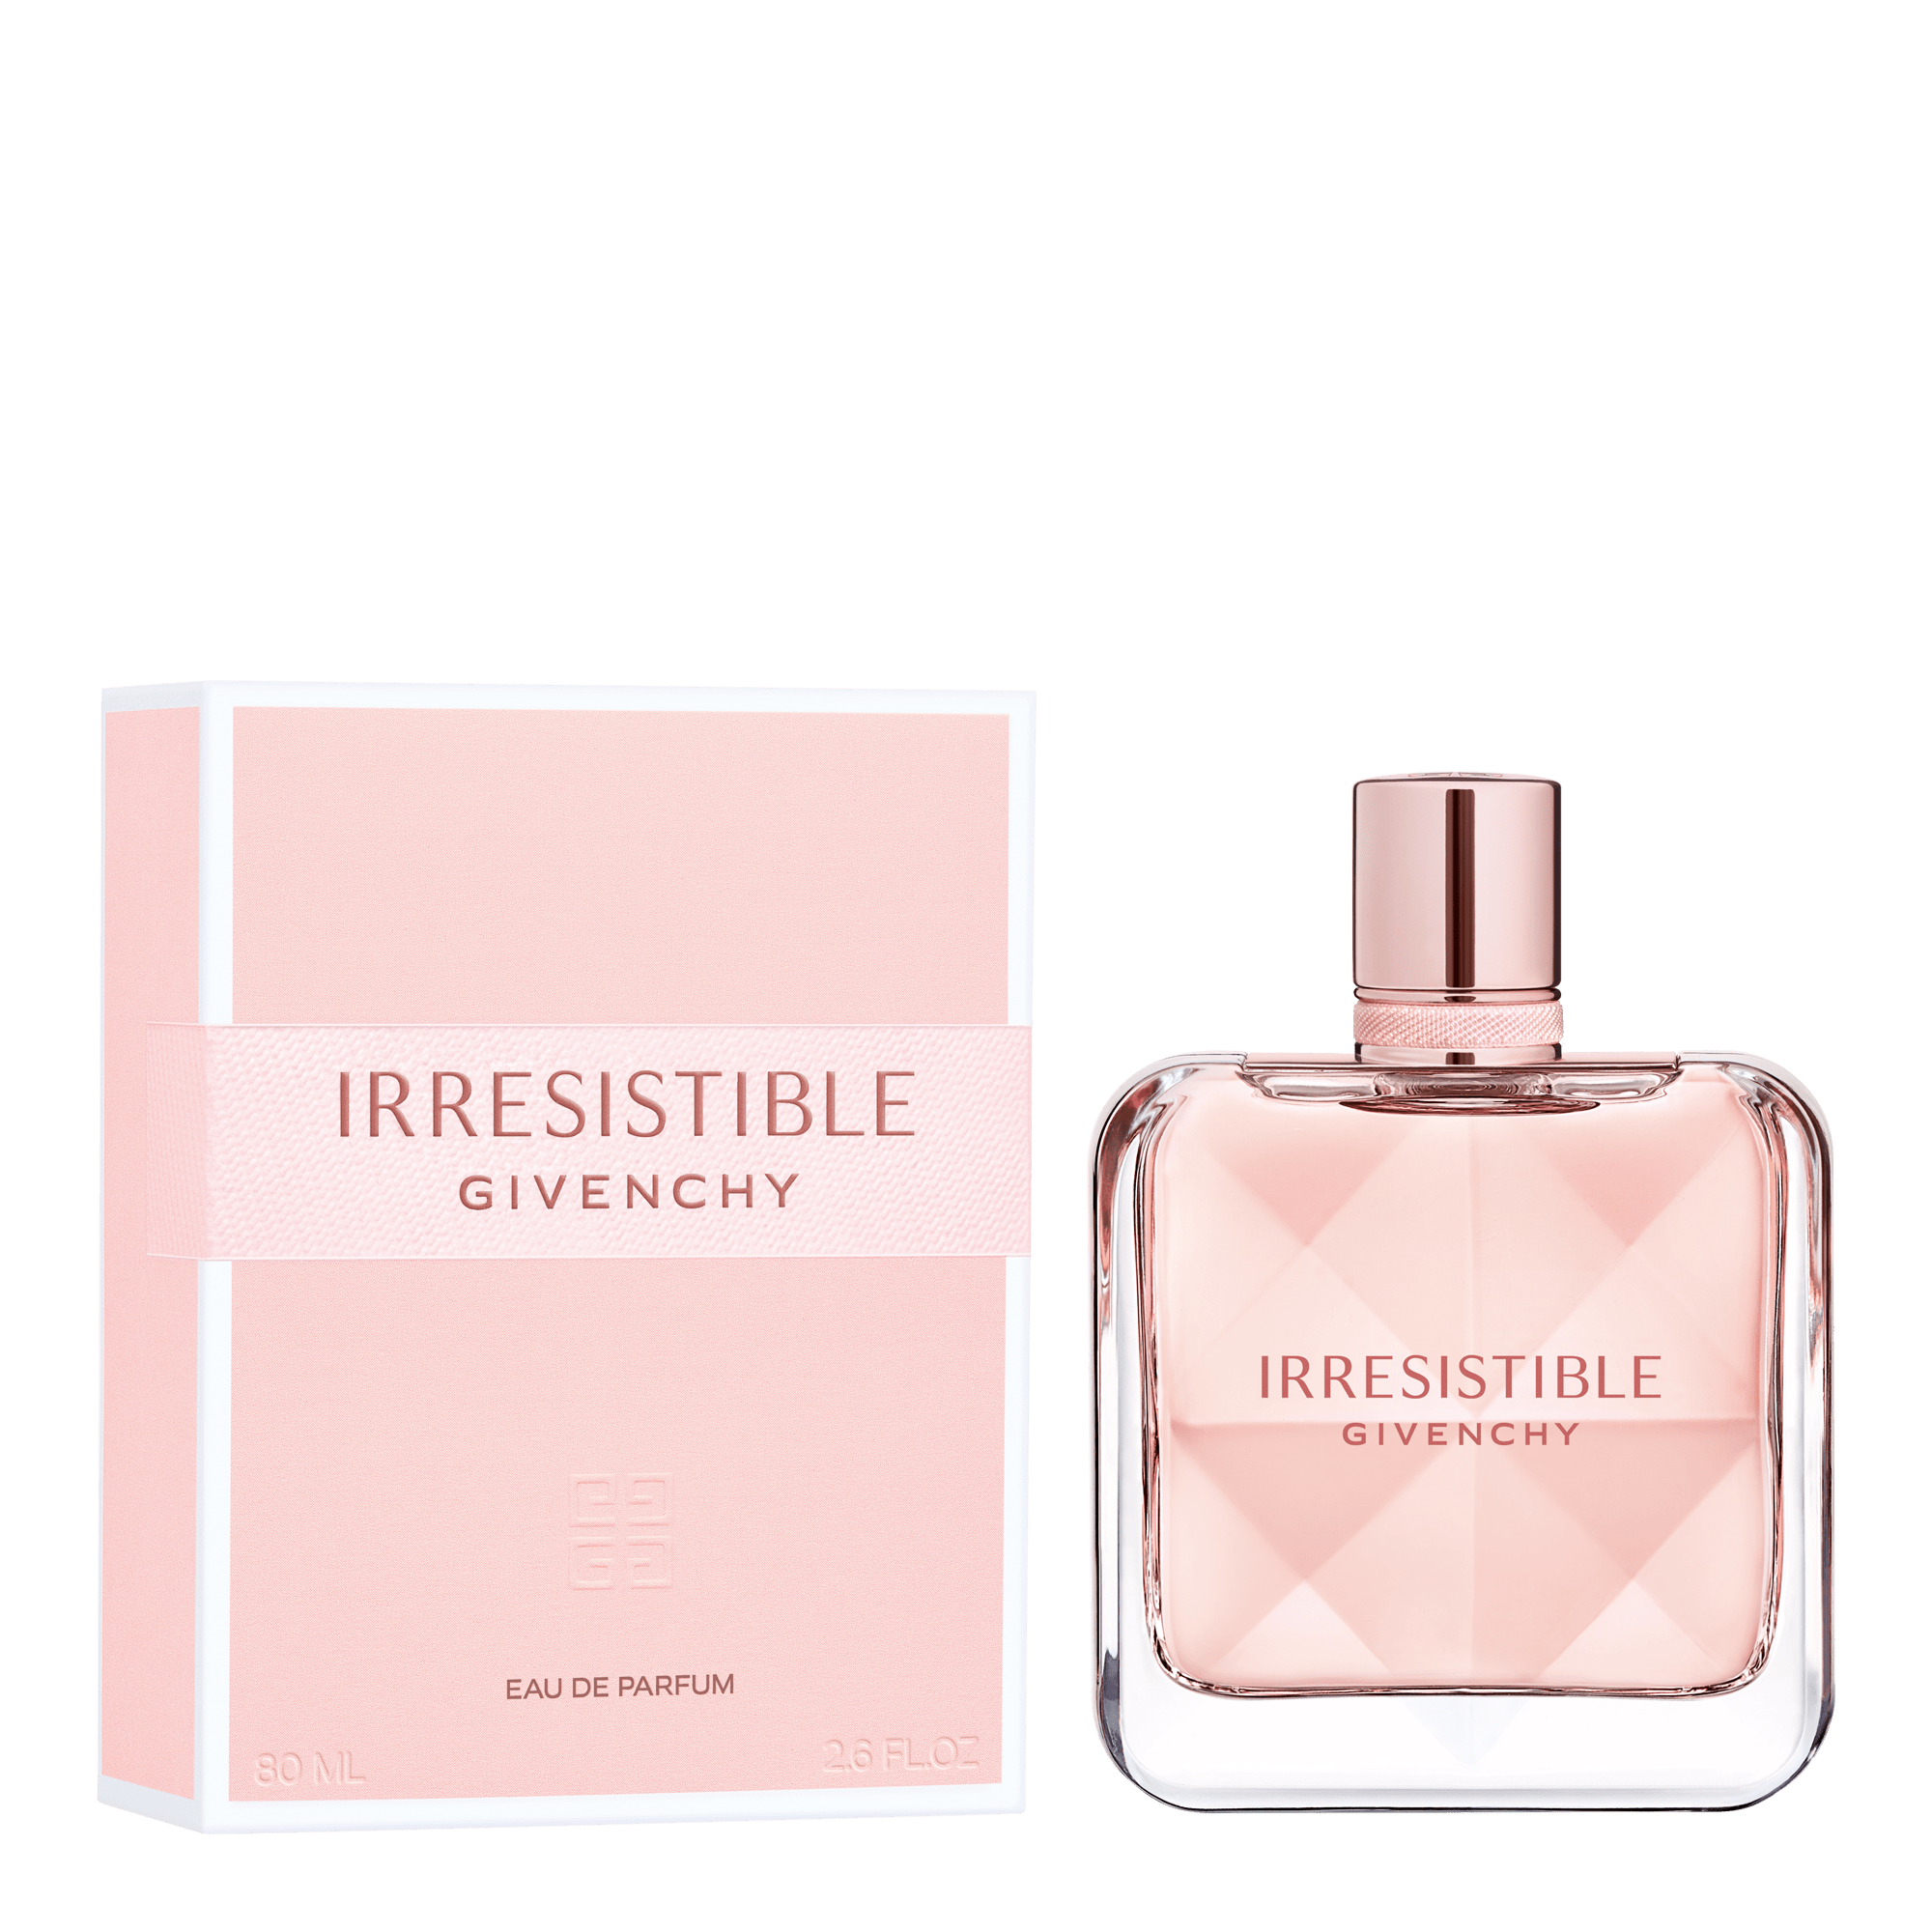 irresistible givenchy eau de parfum